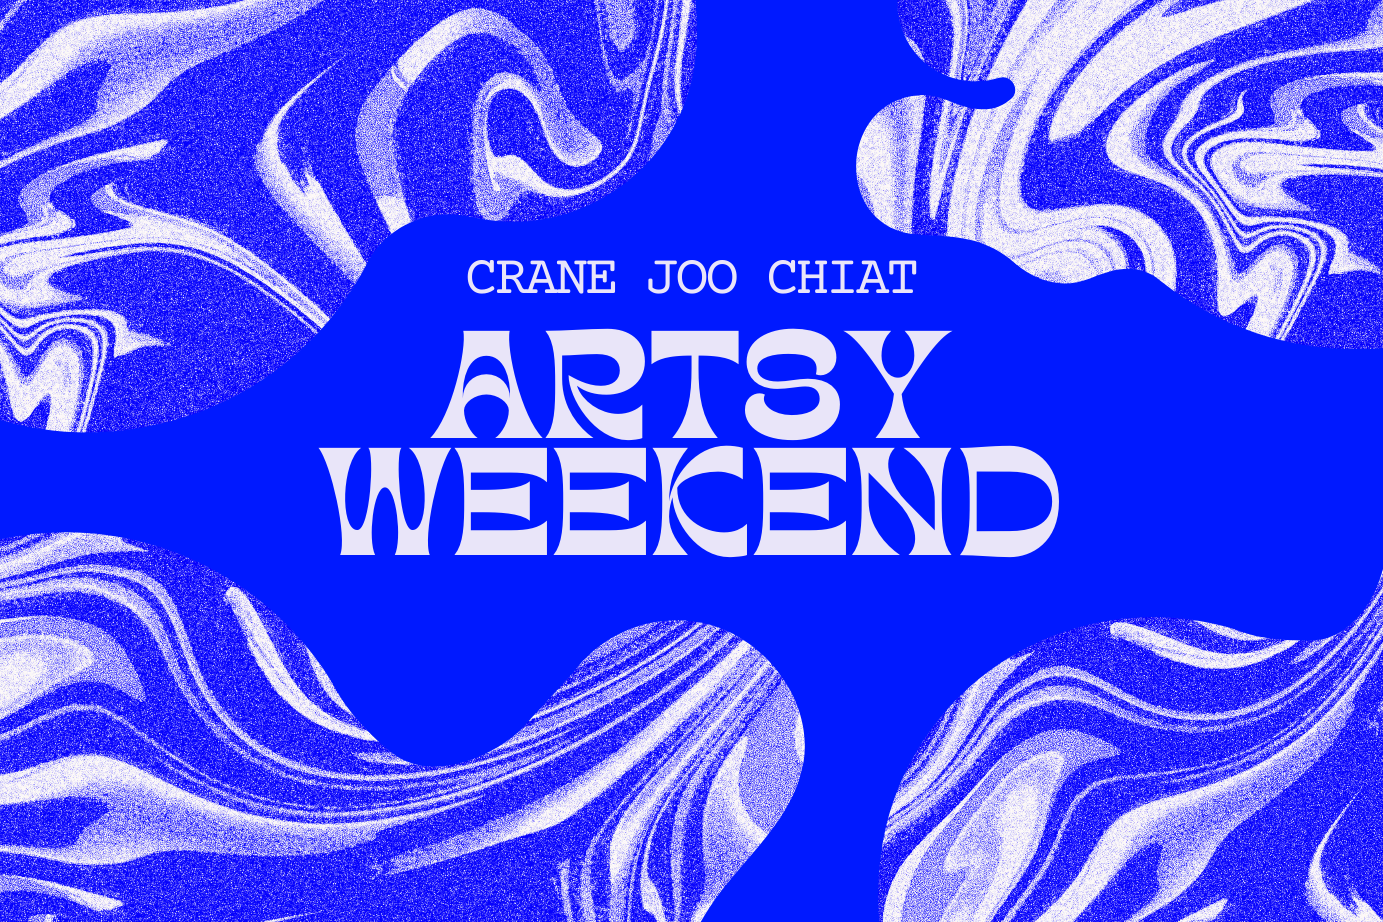 Artsy Weekend @ Crane Joo Chiat